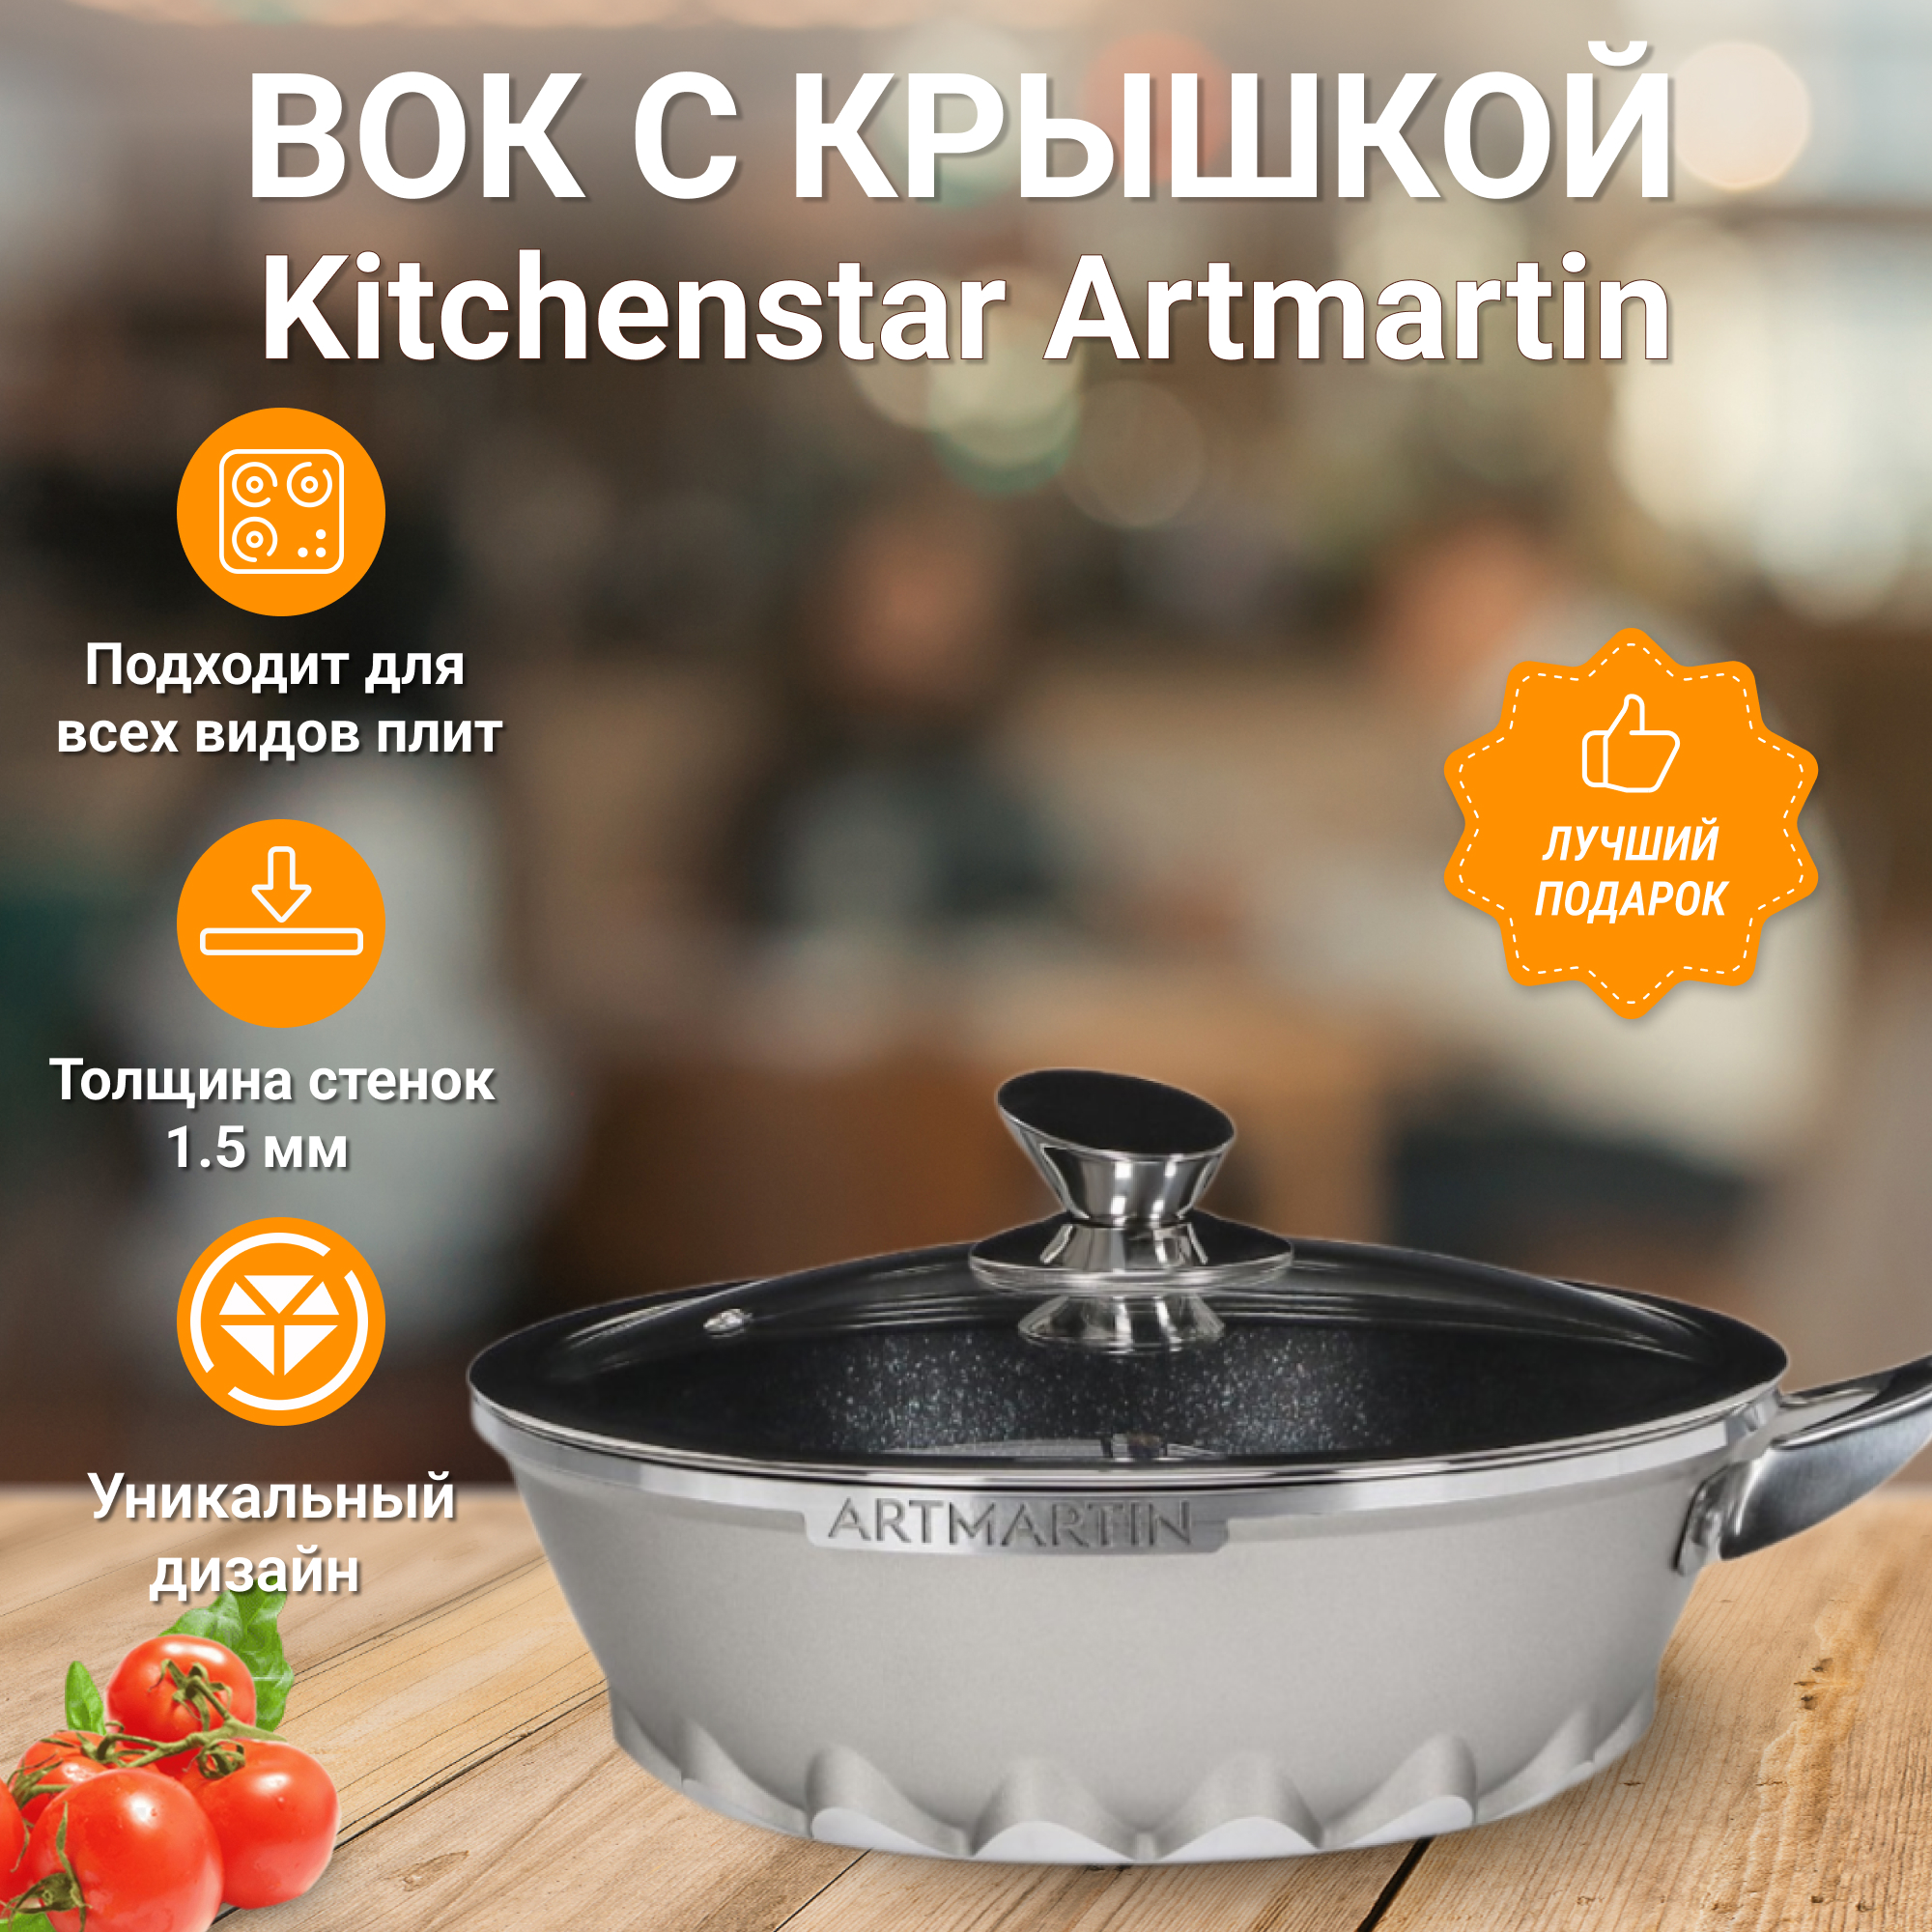 Вок с крышкой Kitchen star Artmartin 24 см, цвет серый - фото 5